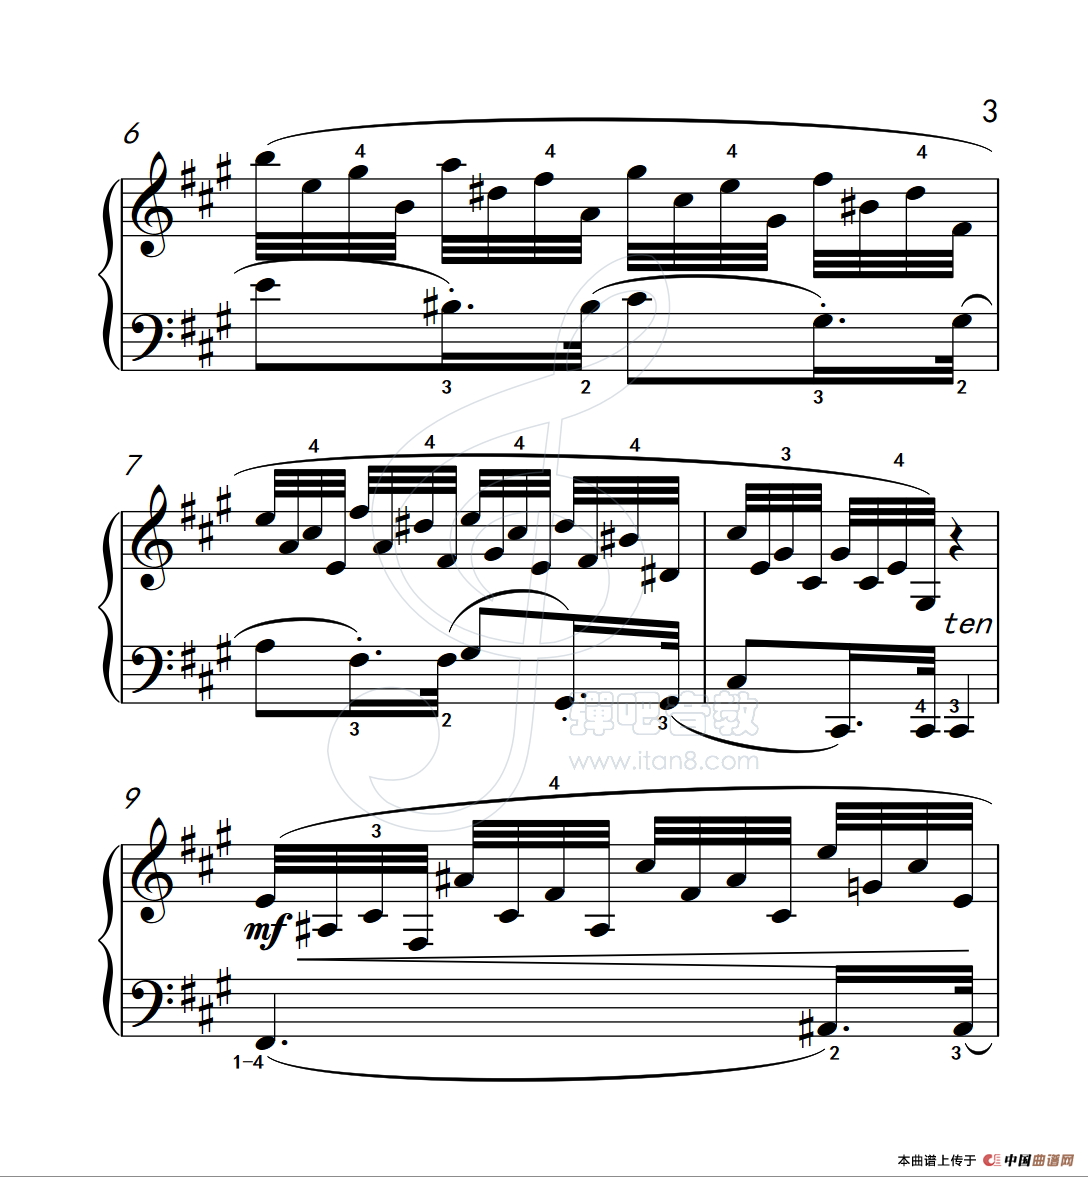 《练习曲 37》钢琴曲谱图分享